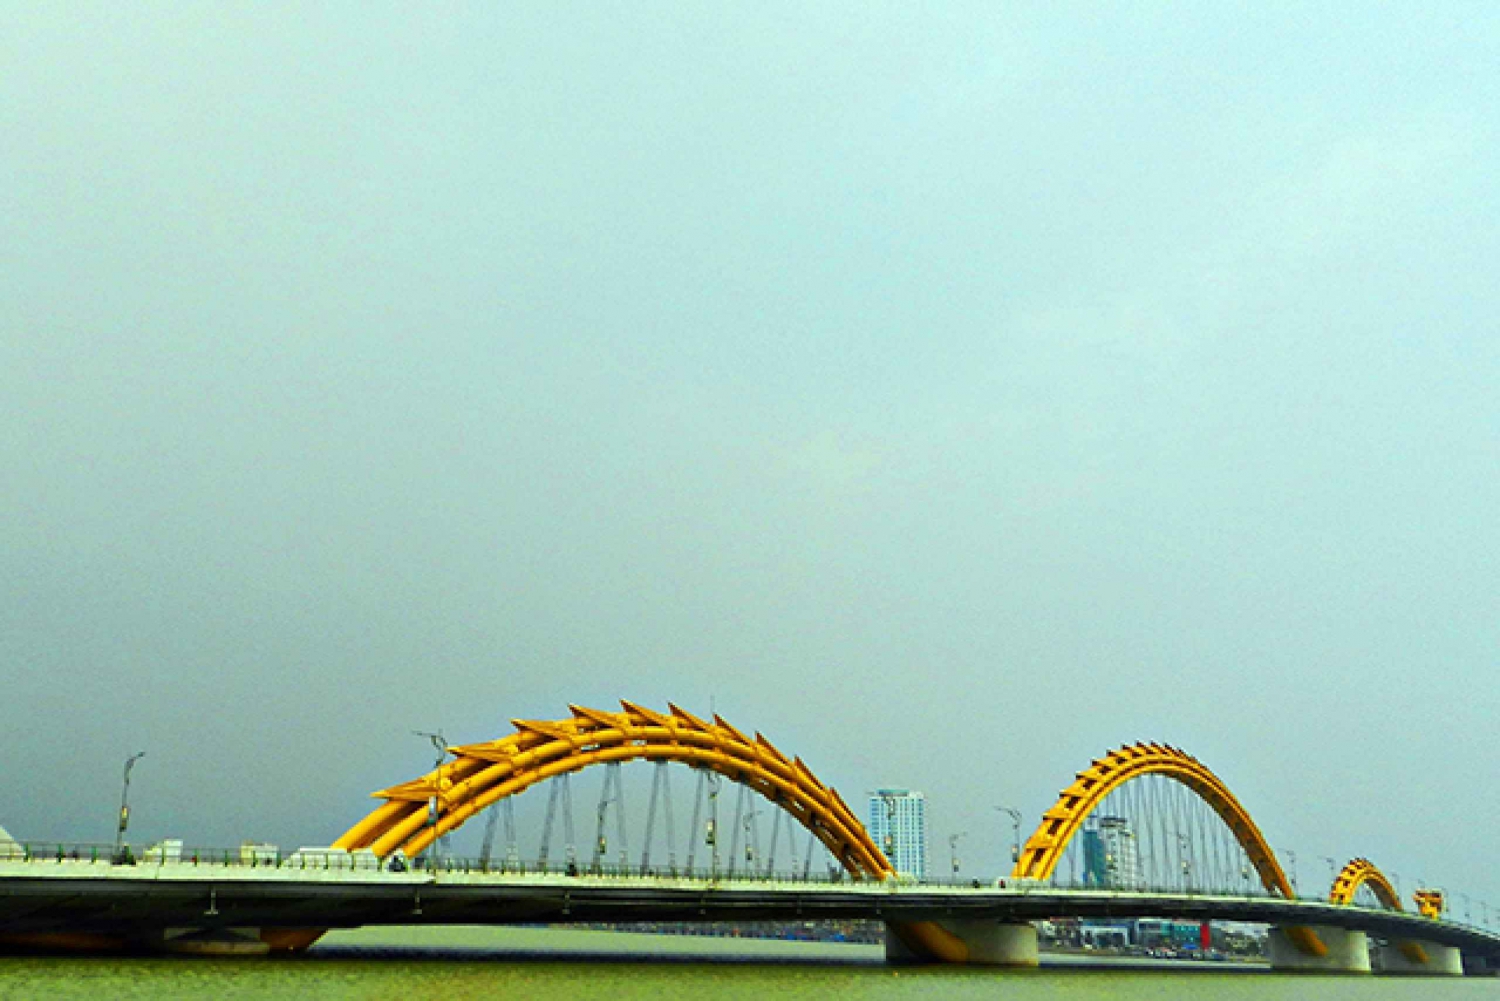 Da Nang - Half-Day Museums and Bridges Tour